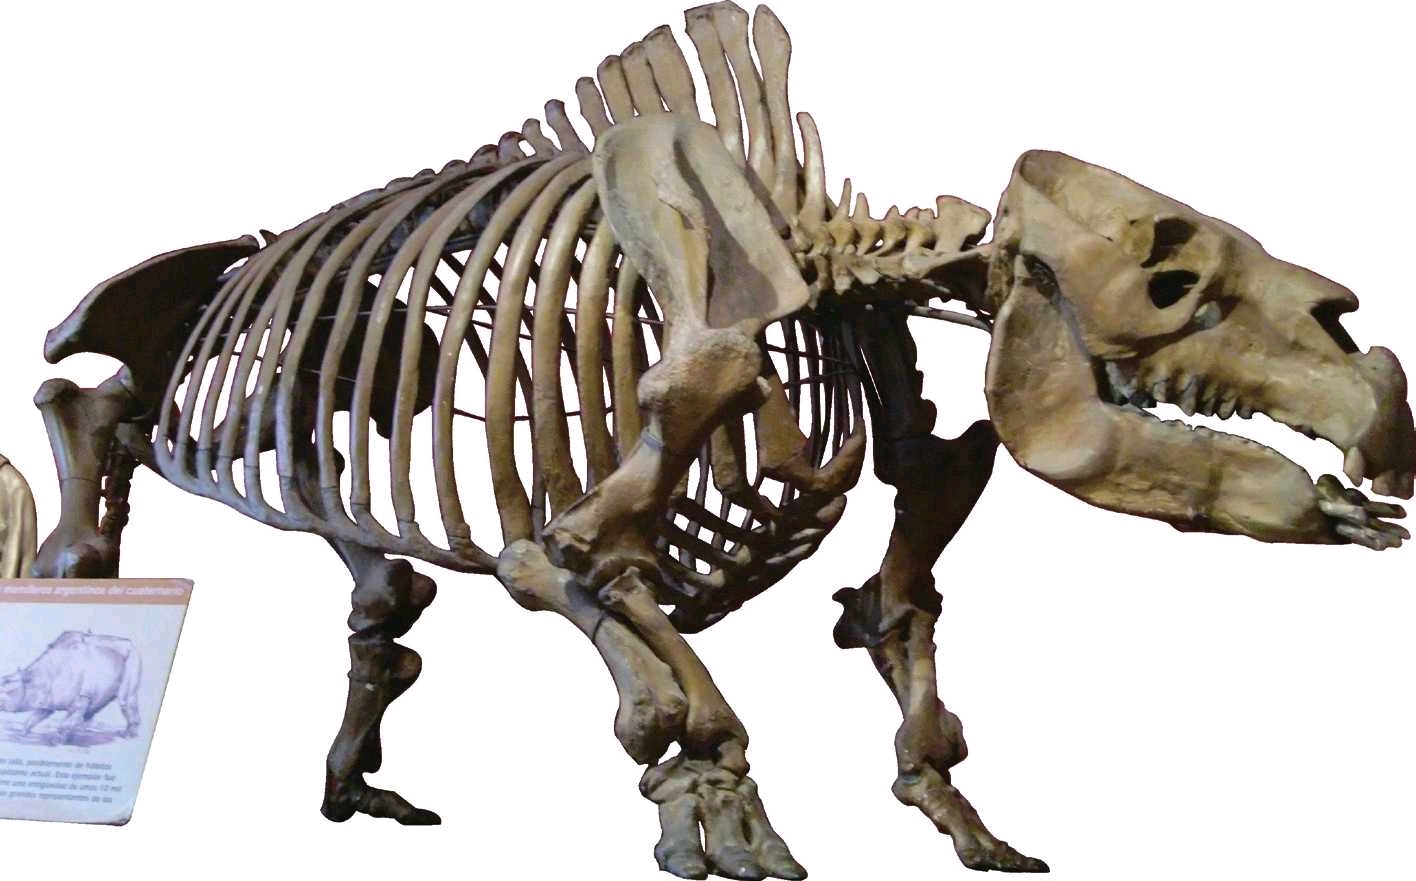 箭齿兽的骨骼,注意其巨大的头骨和粗壮的身体四肢.